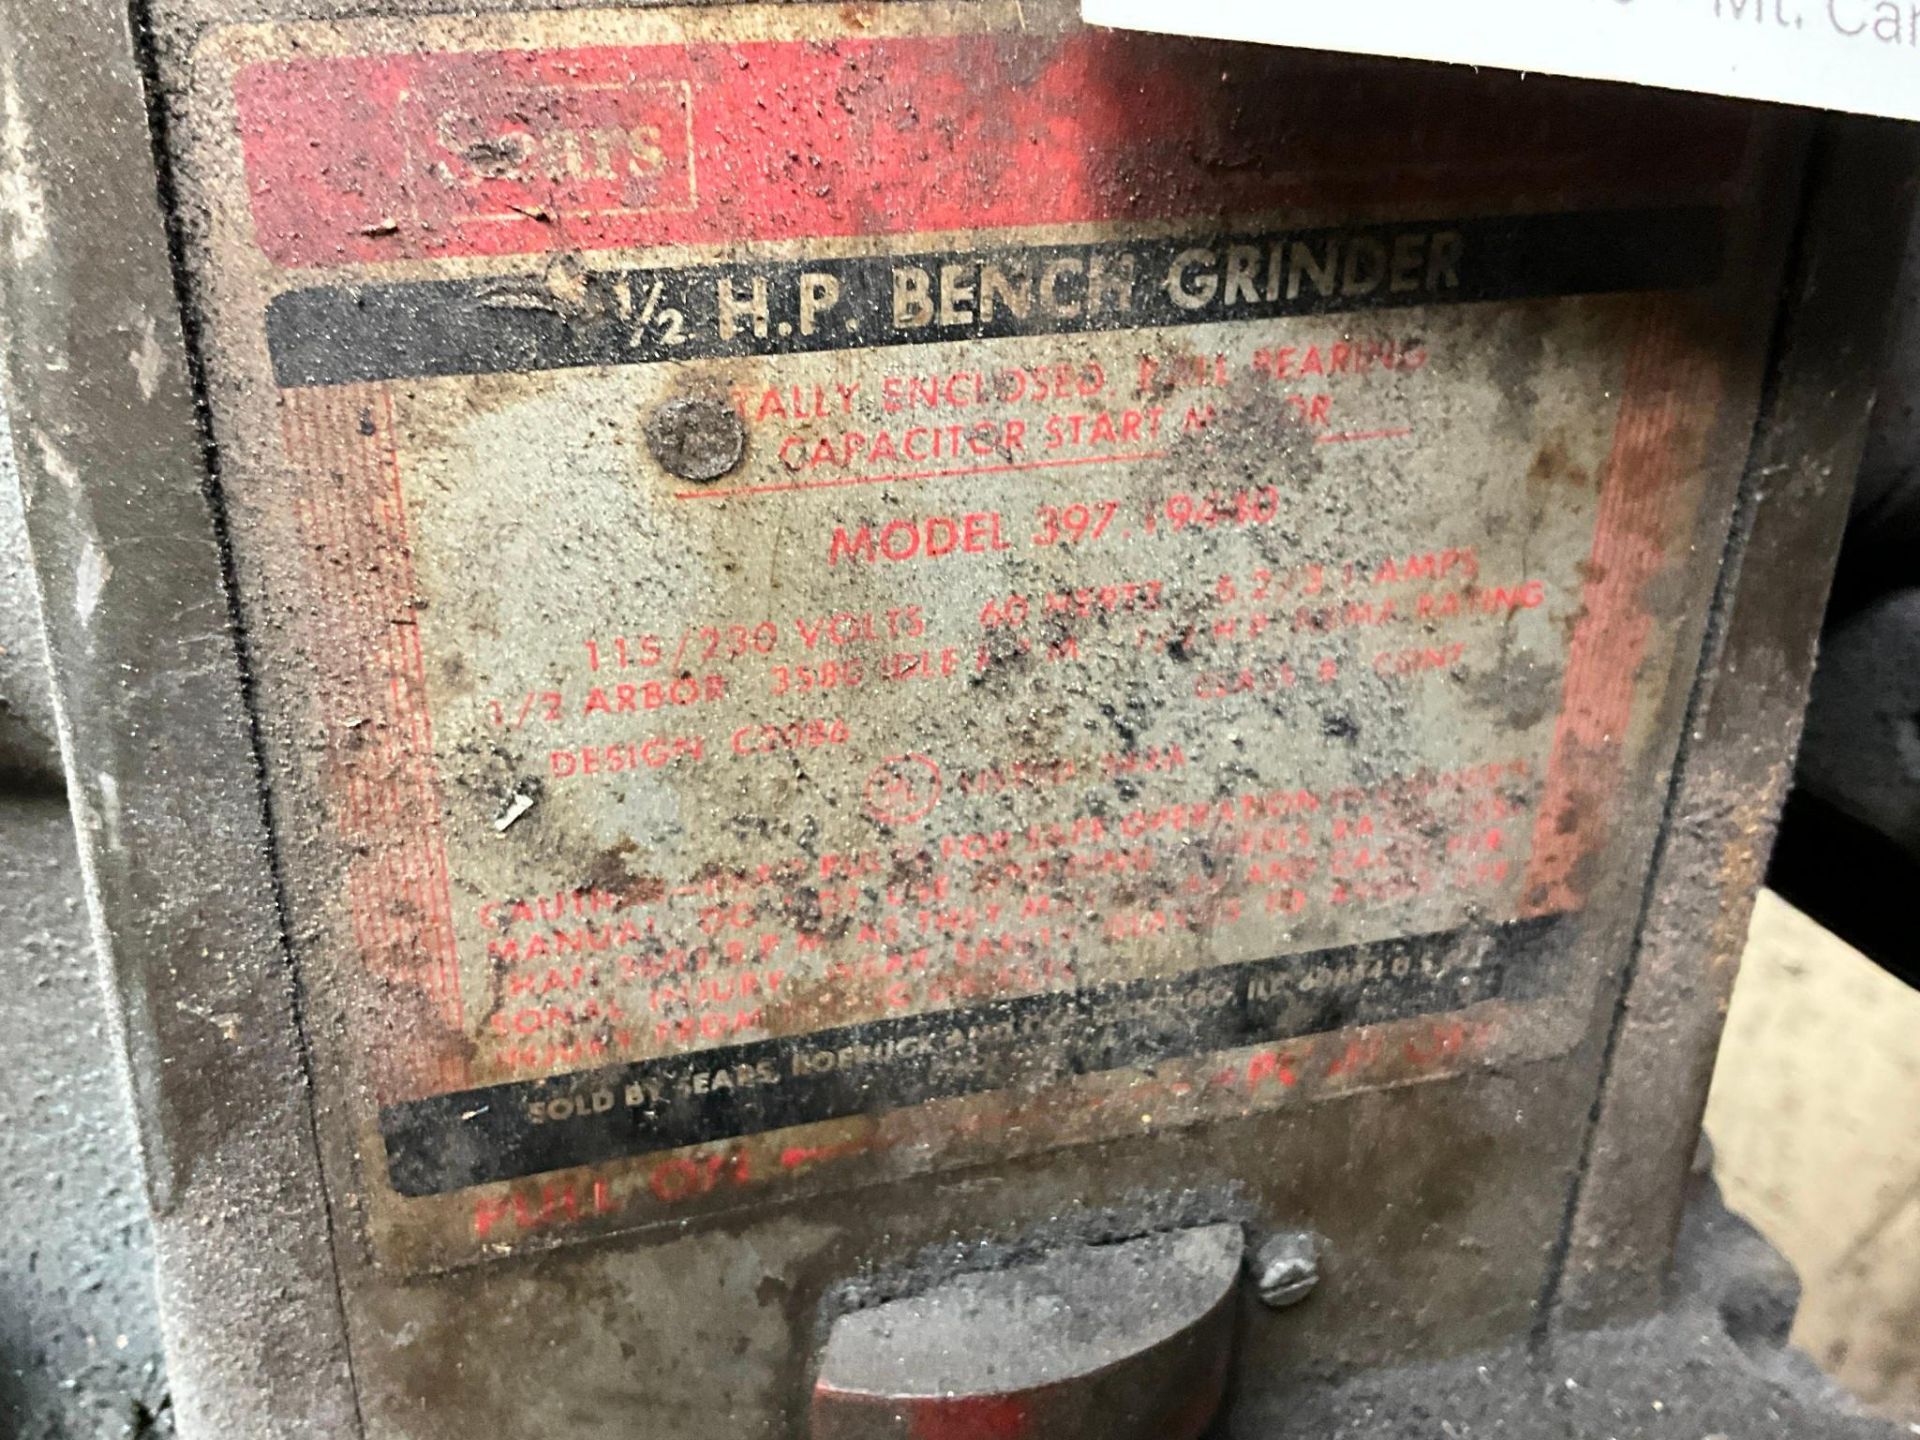 1/2 H.P. BENCH GRINDER - Image 3 of 3